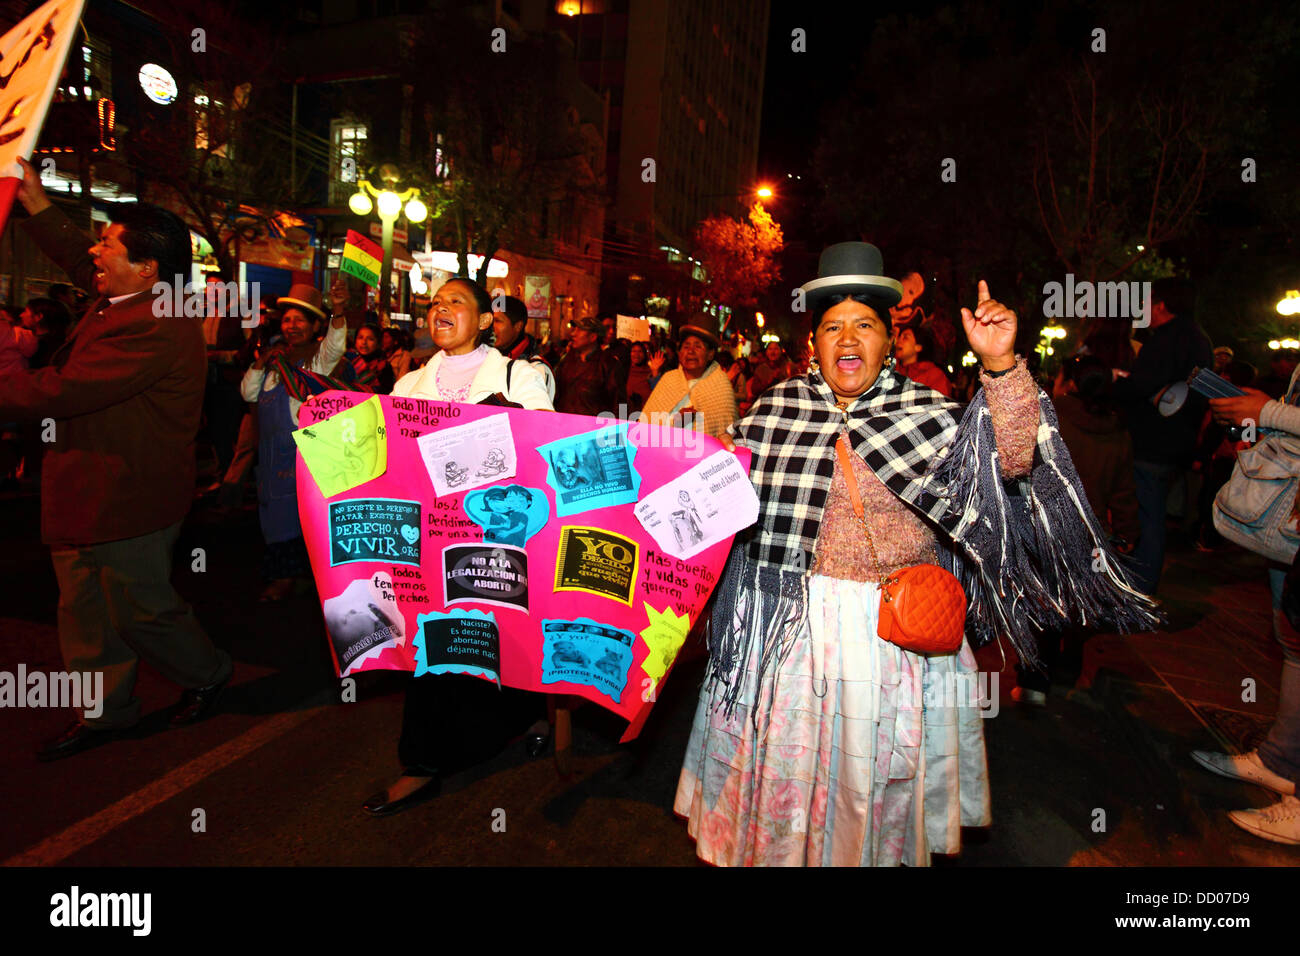 LA PAZ, BOLIVIA, 22 de agosto de 2013. Las personas toman parte en una marcha organizada por la Red Pro-Vida Pro Vida (Red) para protestar contra la despenalización del aborto. Bolivia ha estado debatiendo si para despenalizar el aborto desde marzo de 2012. Crédito: James Brunker / Alamy Live News Foto de stock